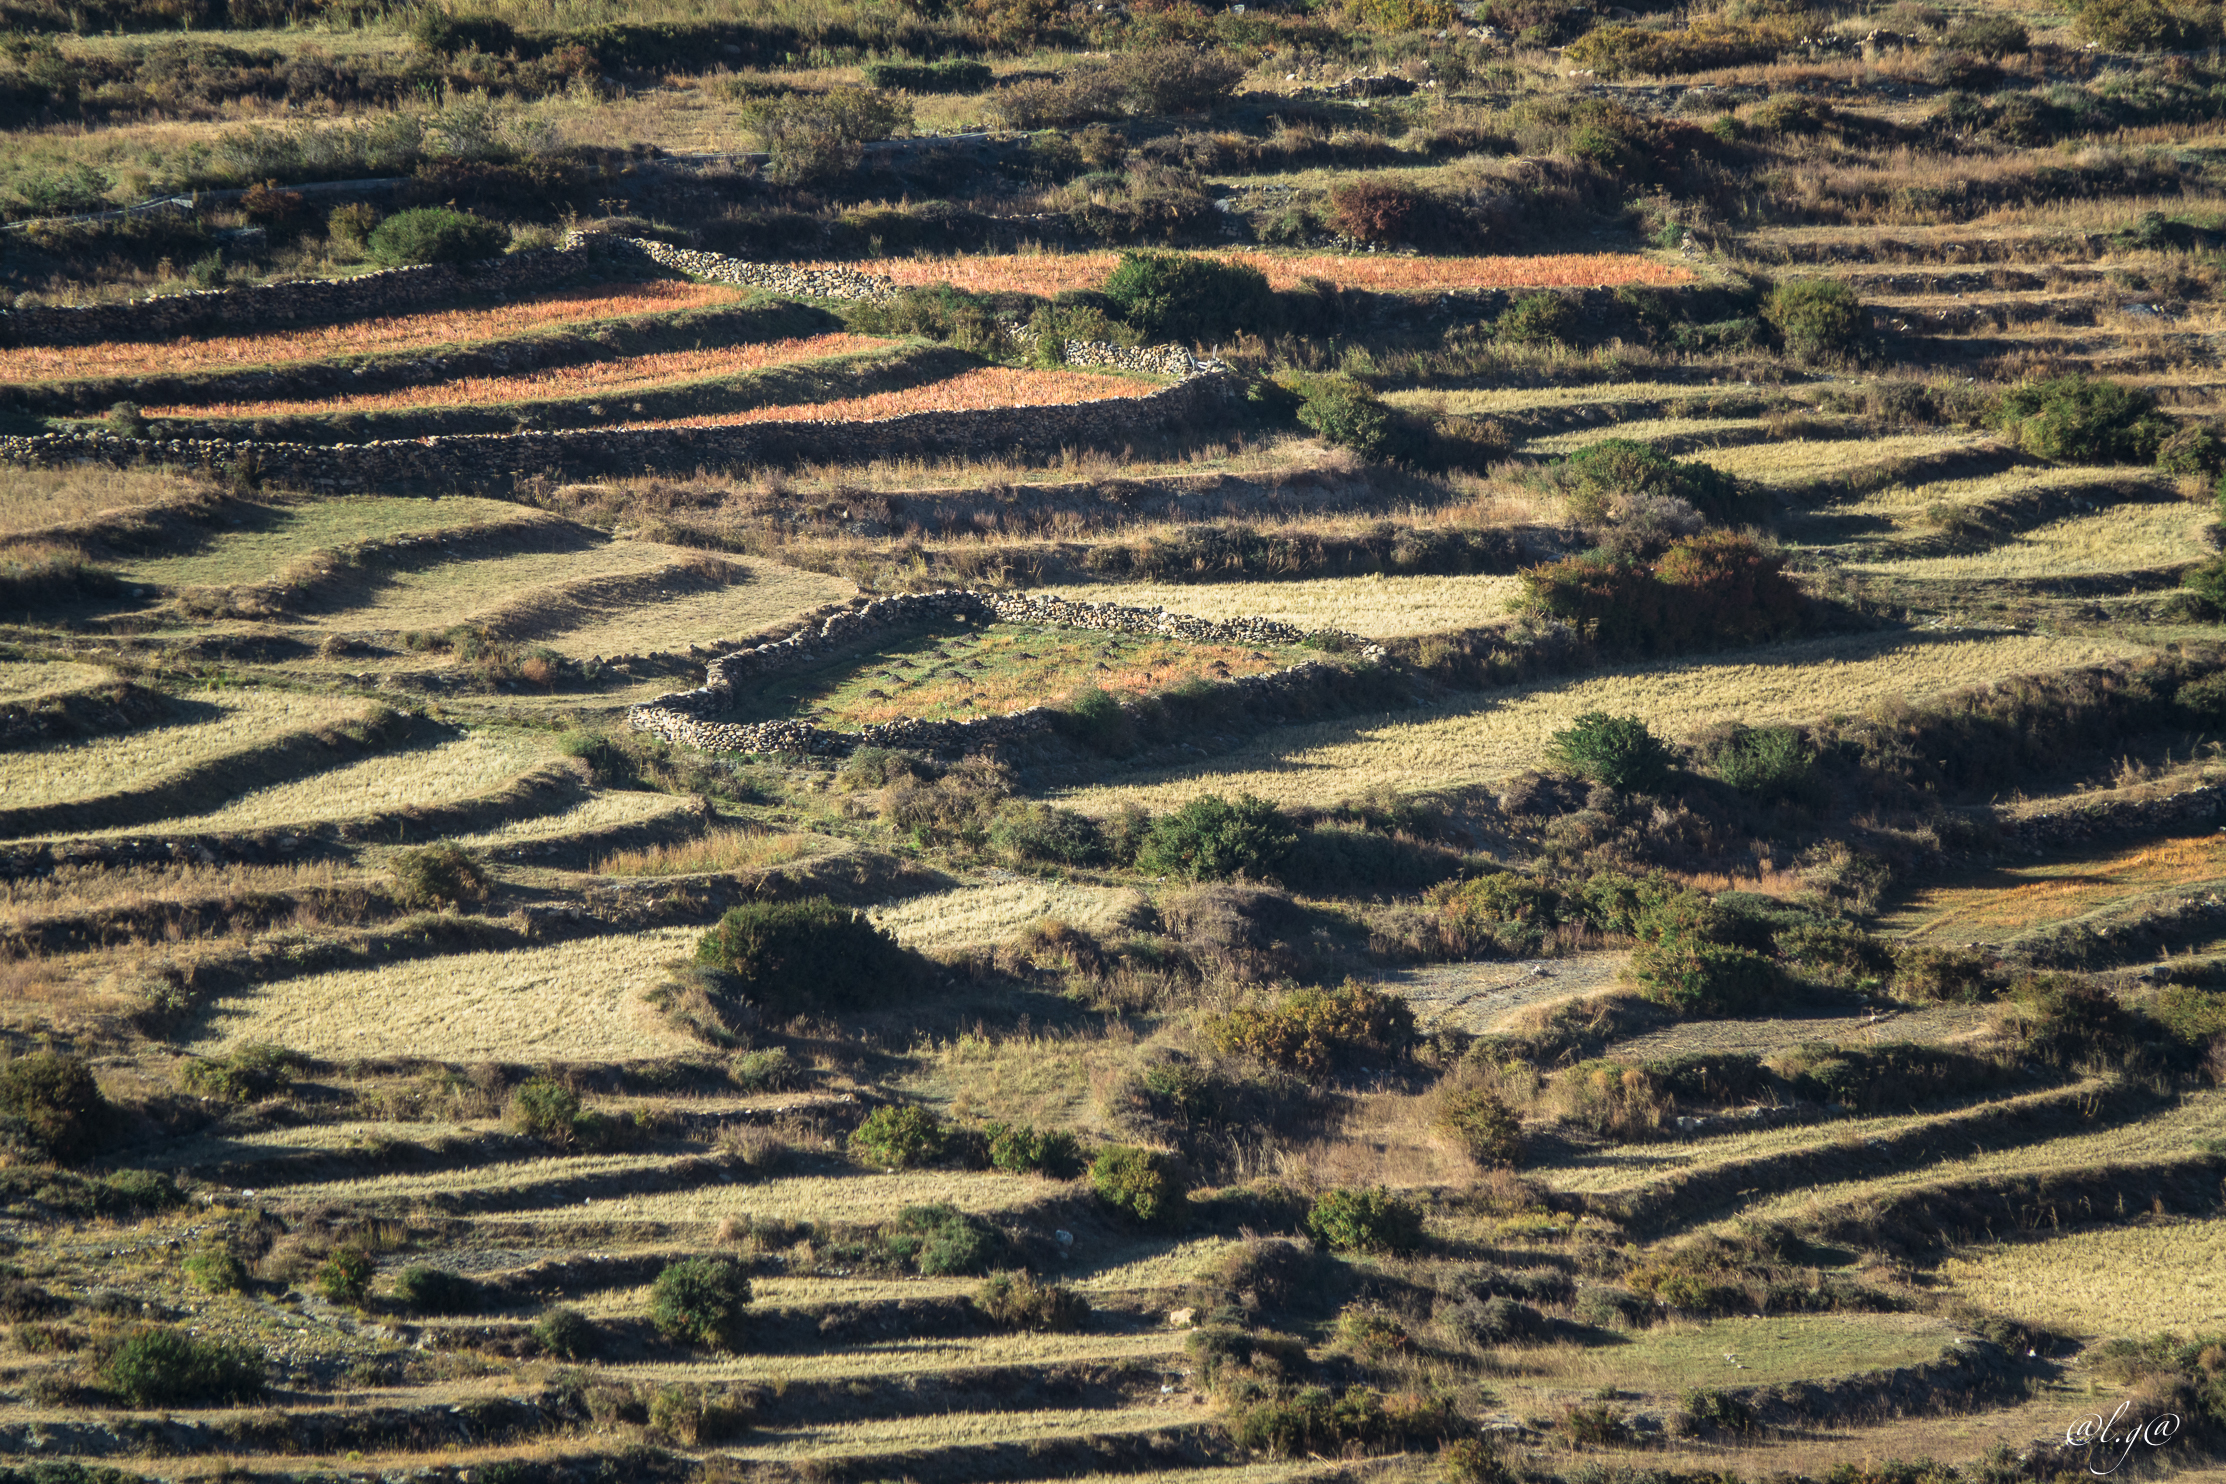 Le village de Dhakmar au pied des falaises rouges.